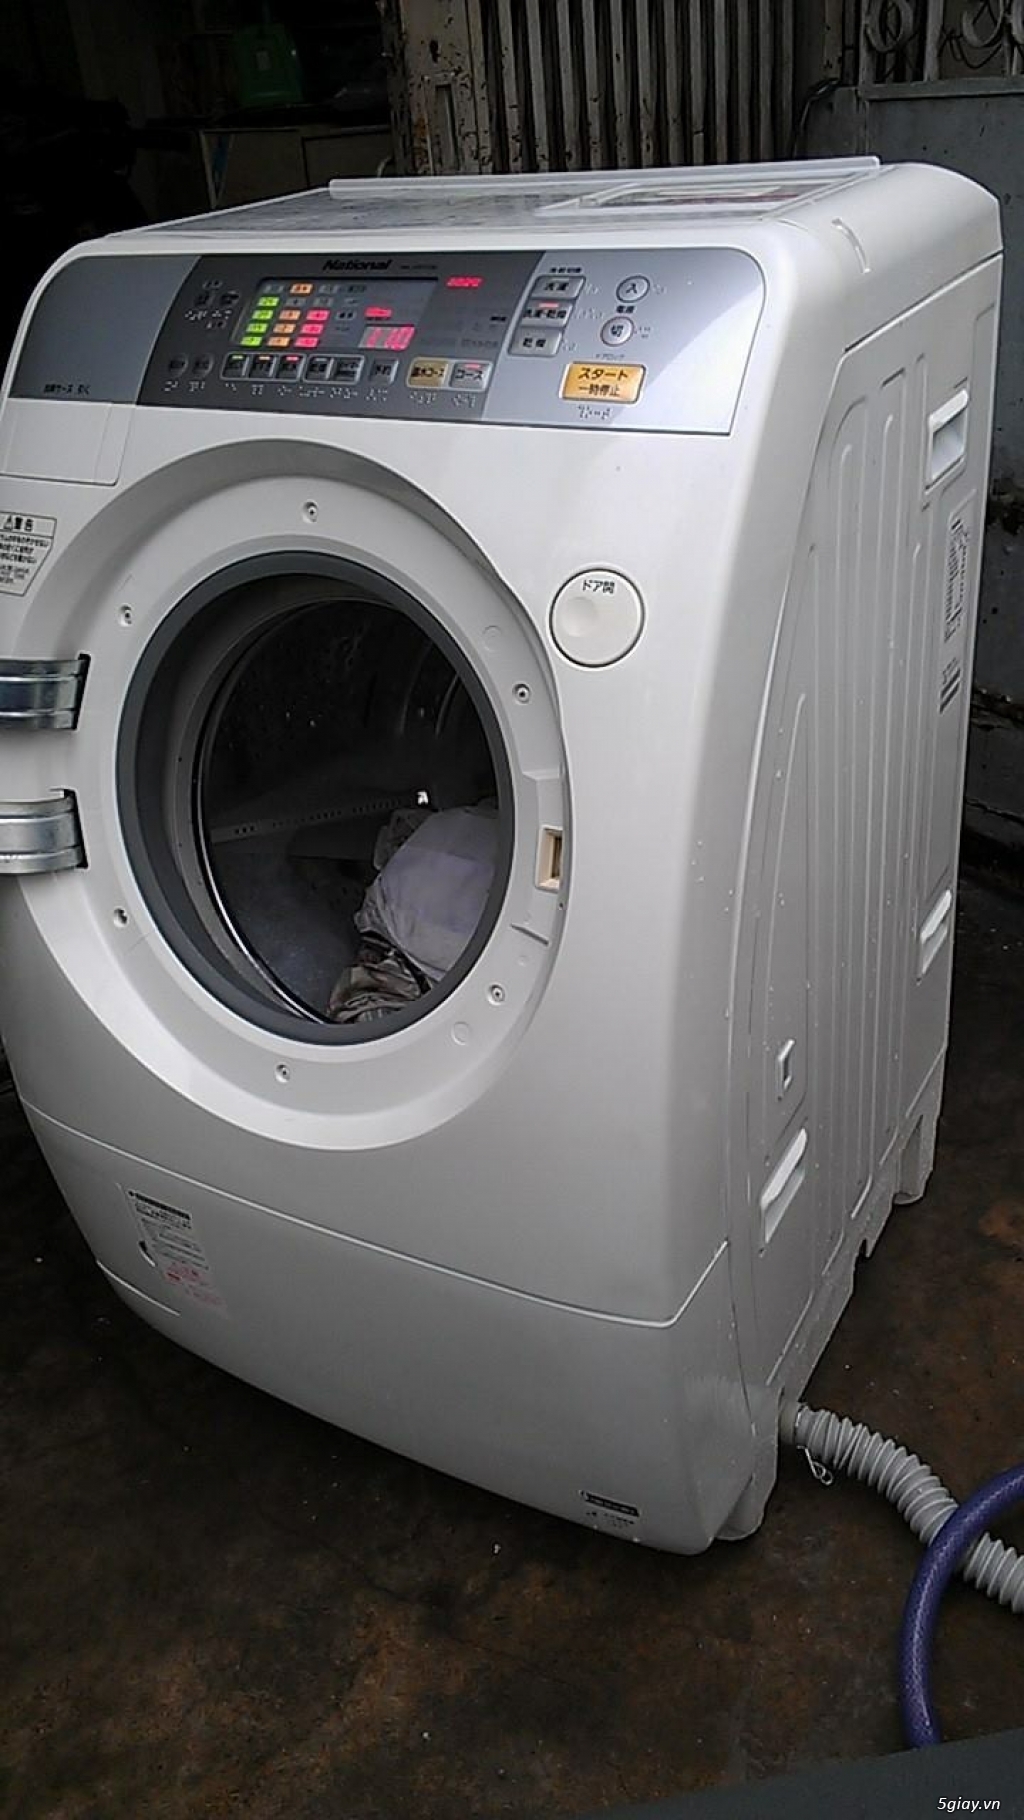 Máy giặt siêu bền lưu kho Nhật Panasonic VR 5600, VR 3600, VR 2200 - 12